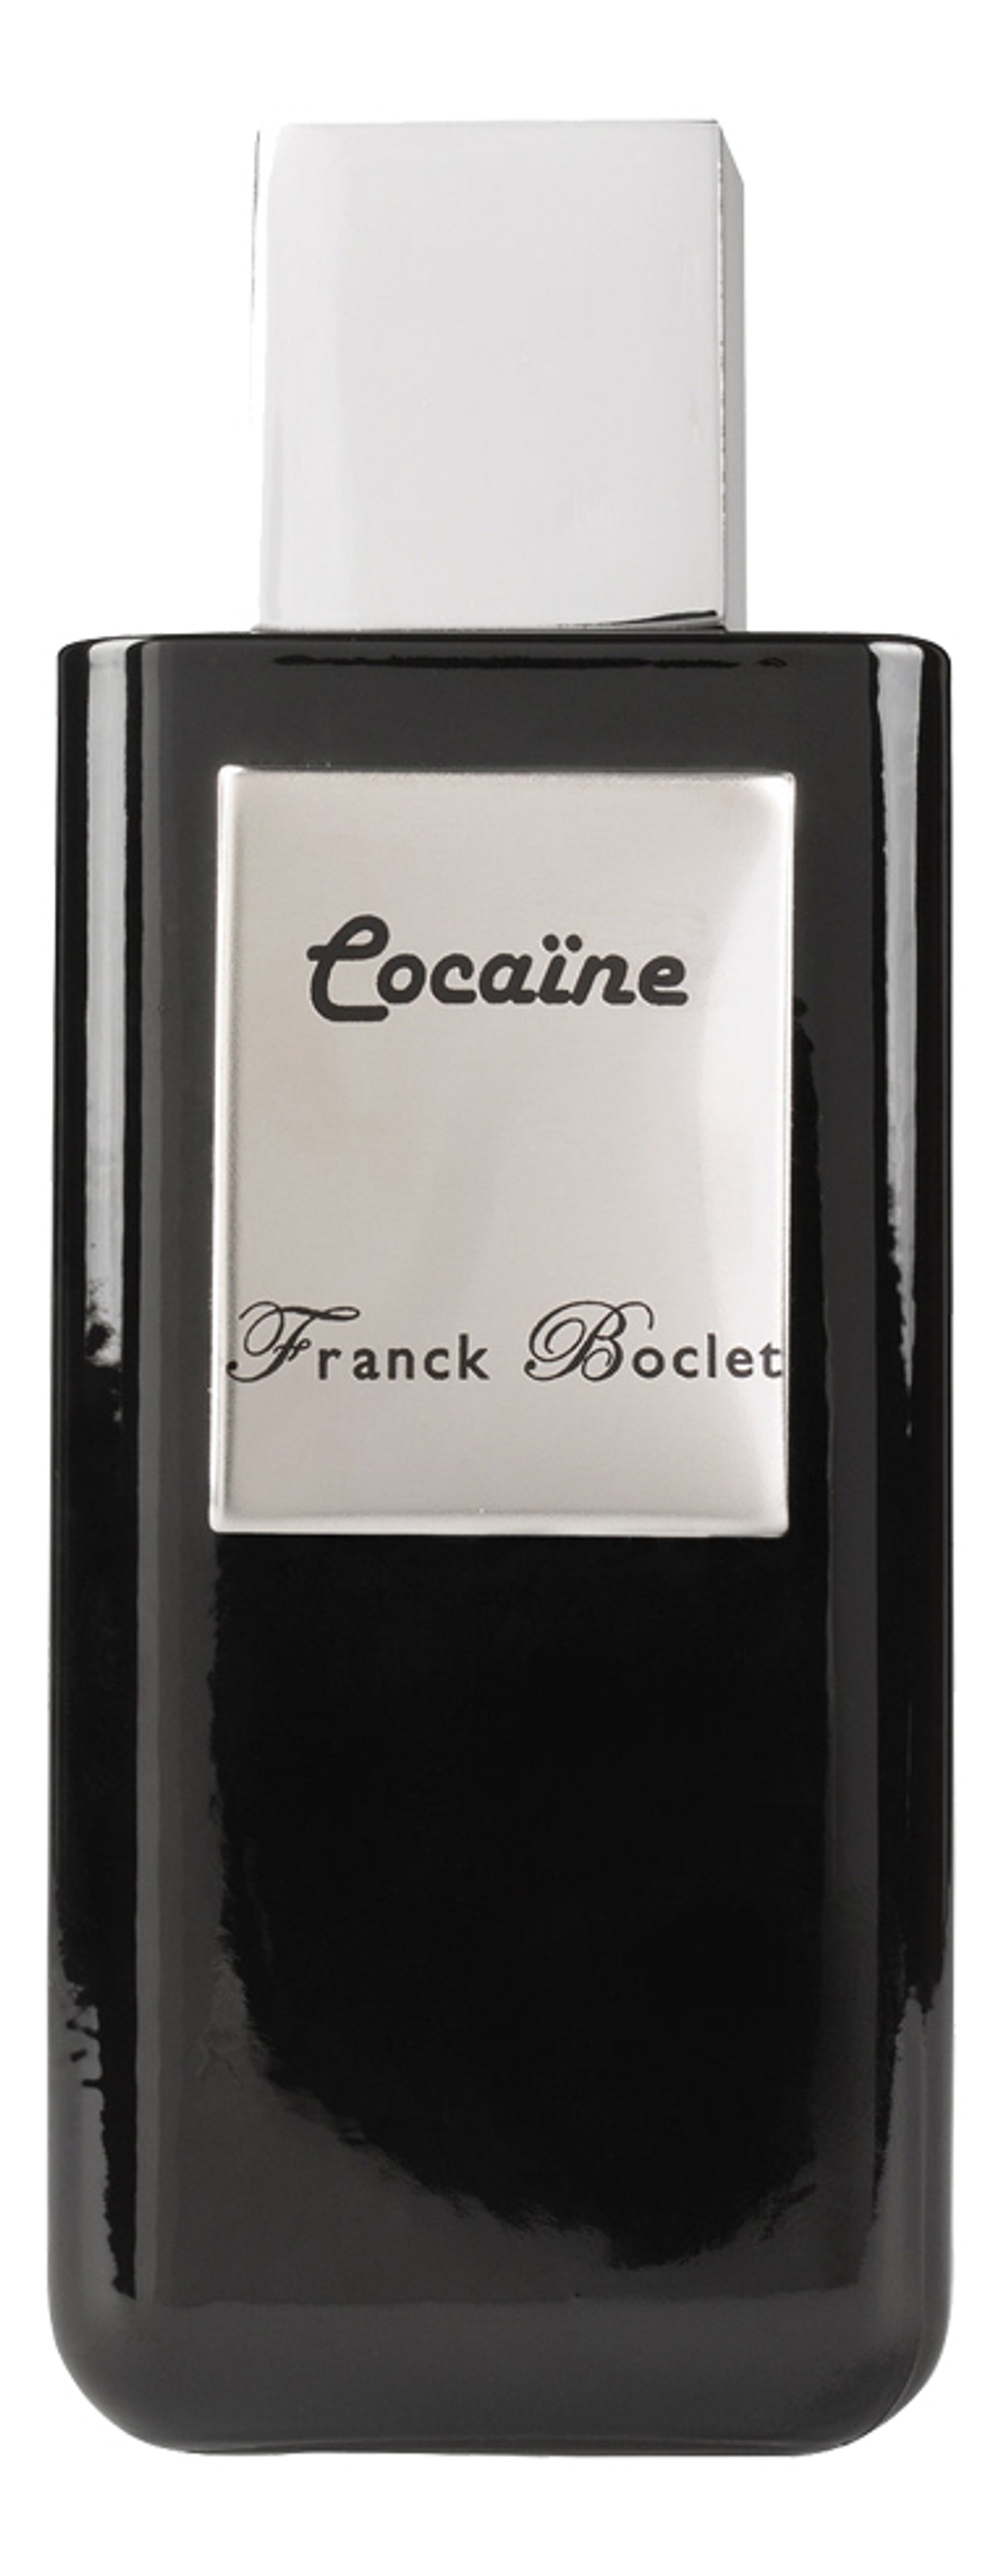 FRANCK BOCLET COCAINE